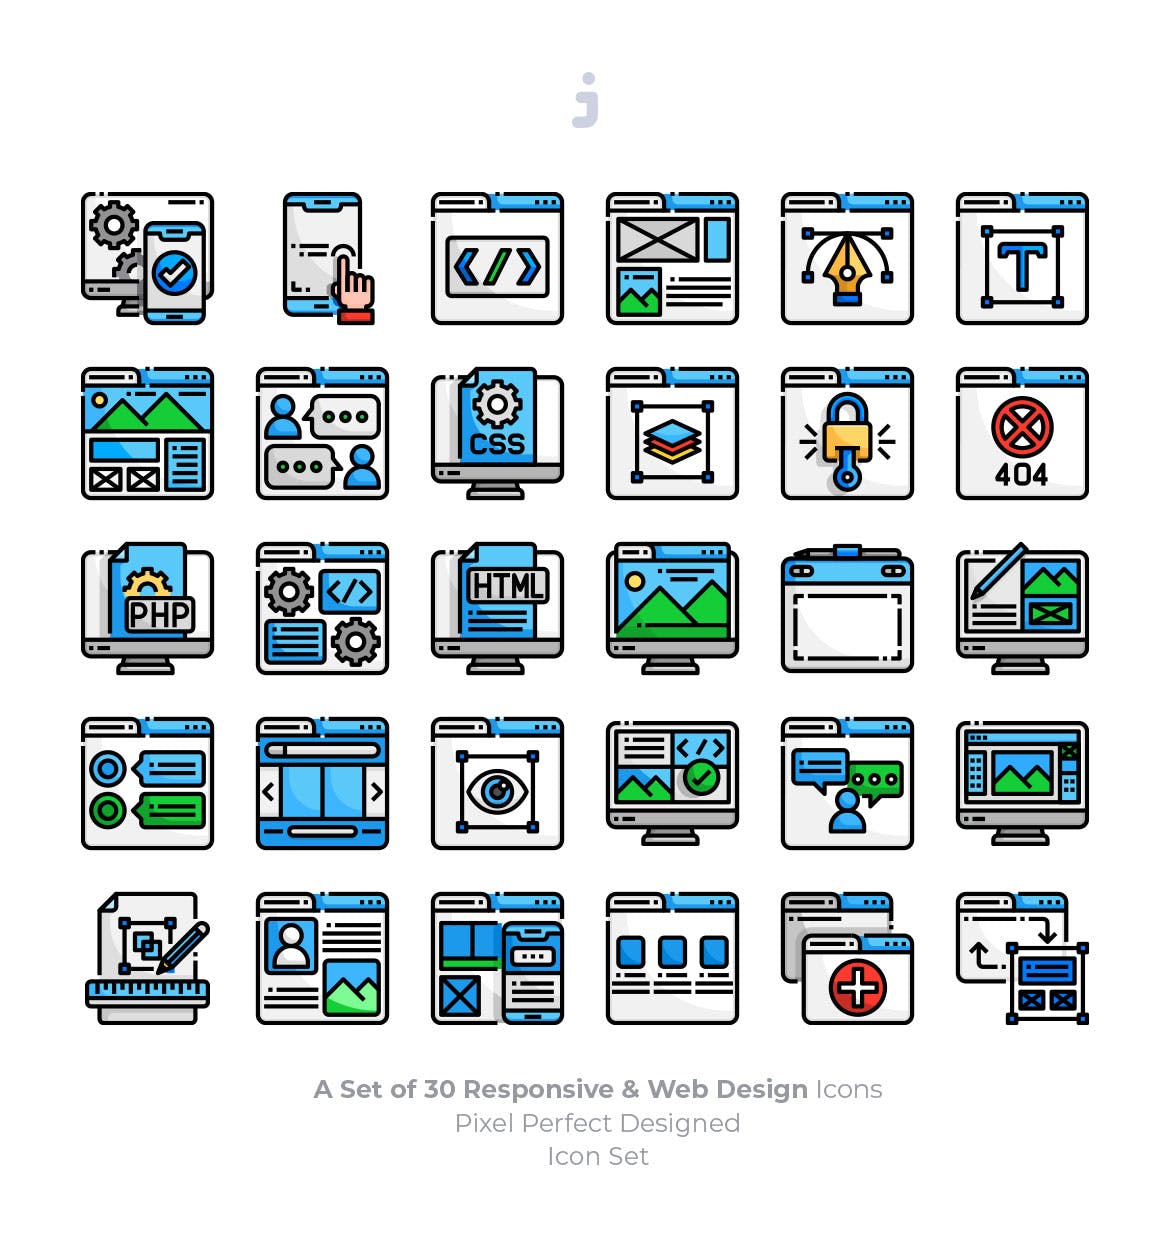 30枚彩色响应式网站设计矢量第一素材精选图标 30 Responsive & Web Design Icons插图(1)